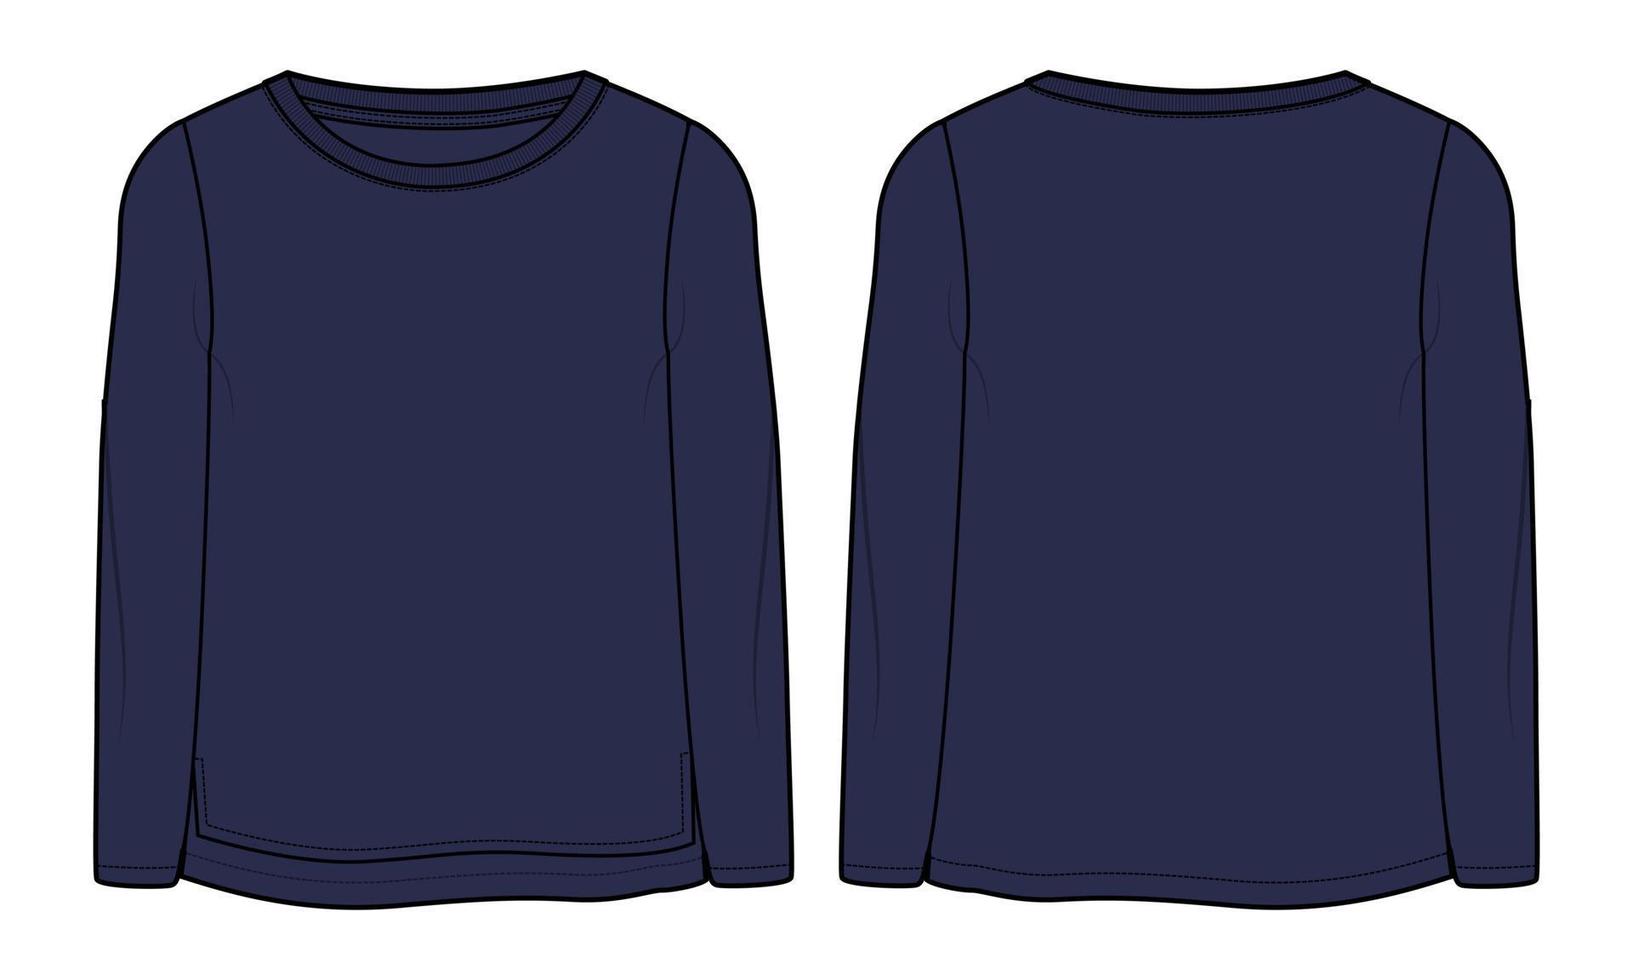 camiseta de manga longa tops técnica de moda desenho plano ilustração vetorial modelo de cor marinha para senhoras e bebés vetor